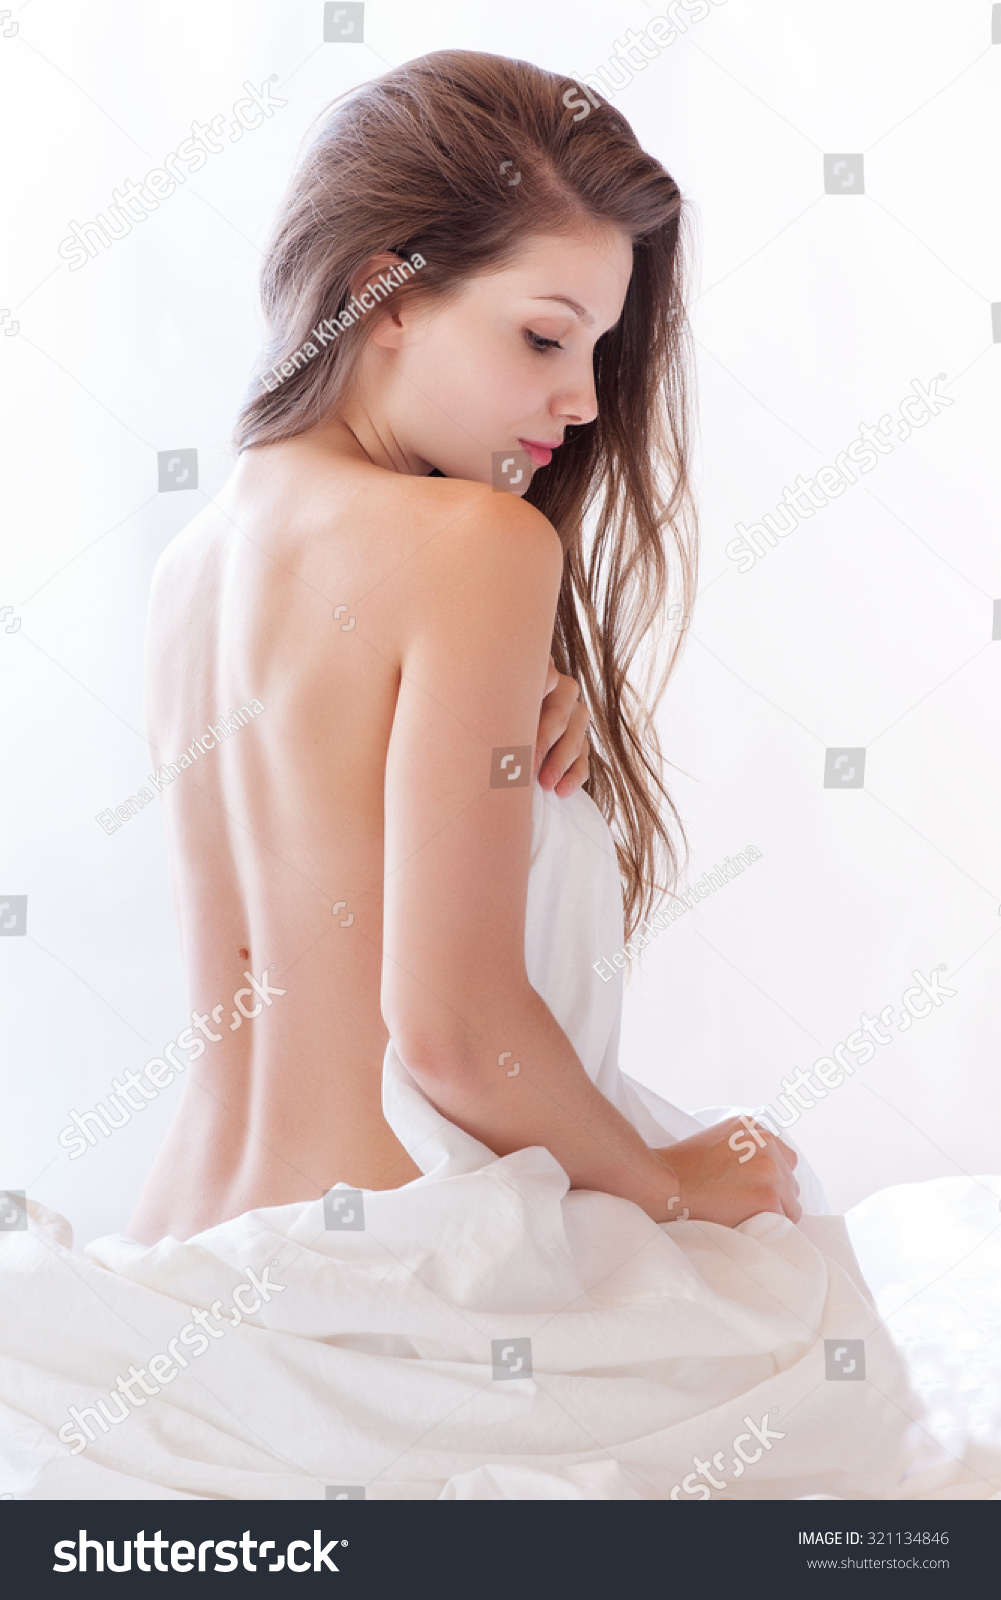 naked girl in sheet